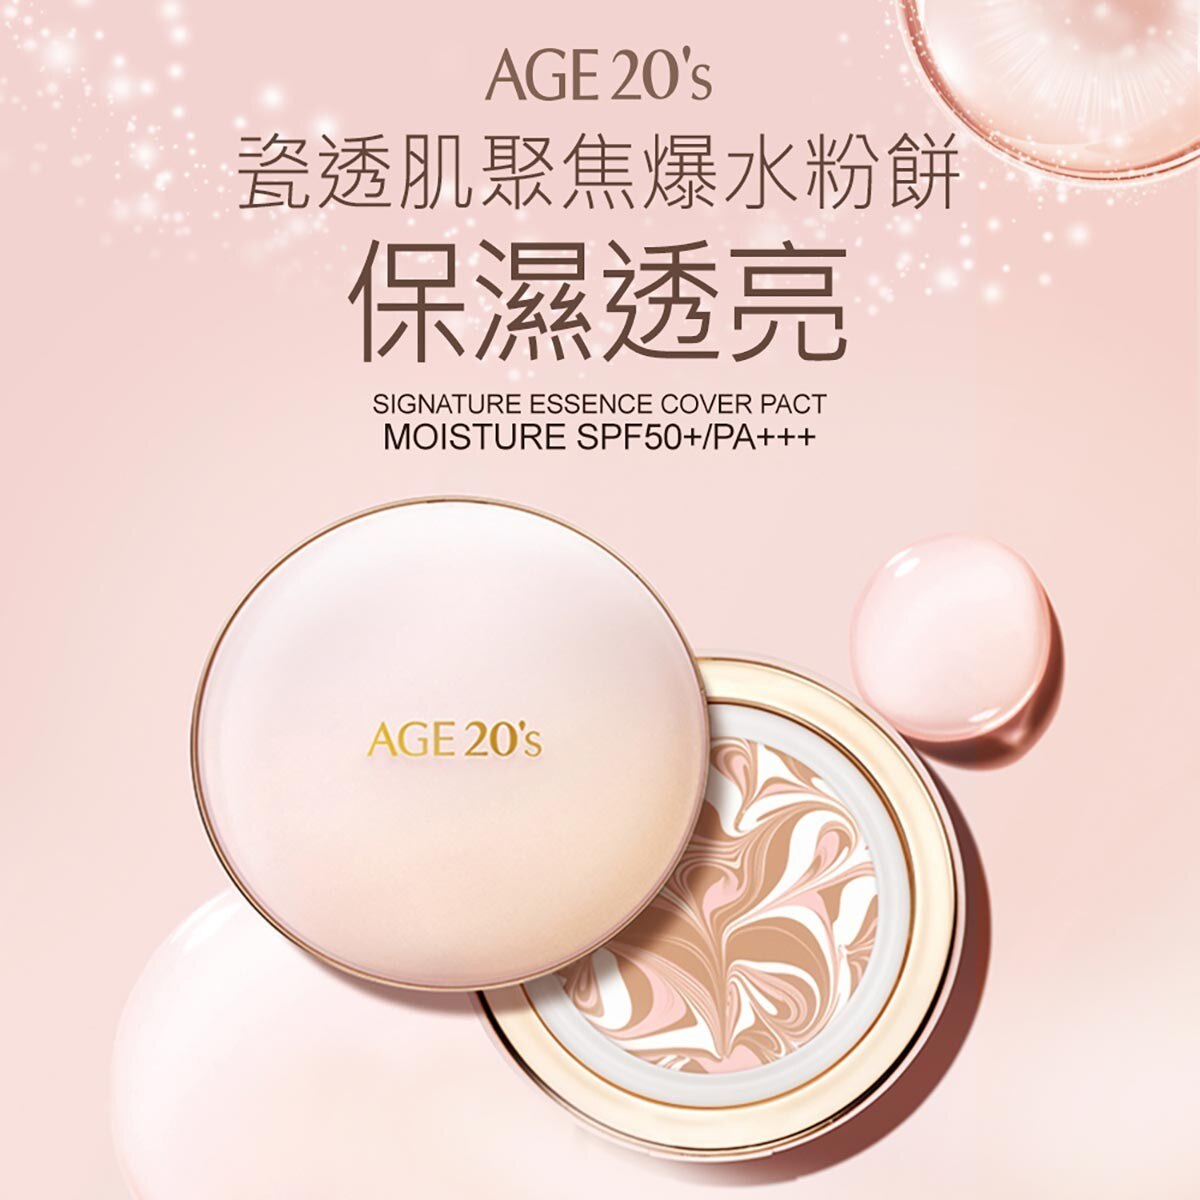 AGE20's 瓷透肌聚焦爆水粉餅(色號21保濕亮白)保養上妝一次完成，長效持妝，膚觸上輕薄不厚重。